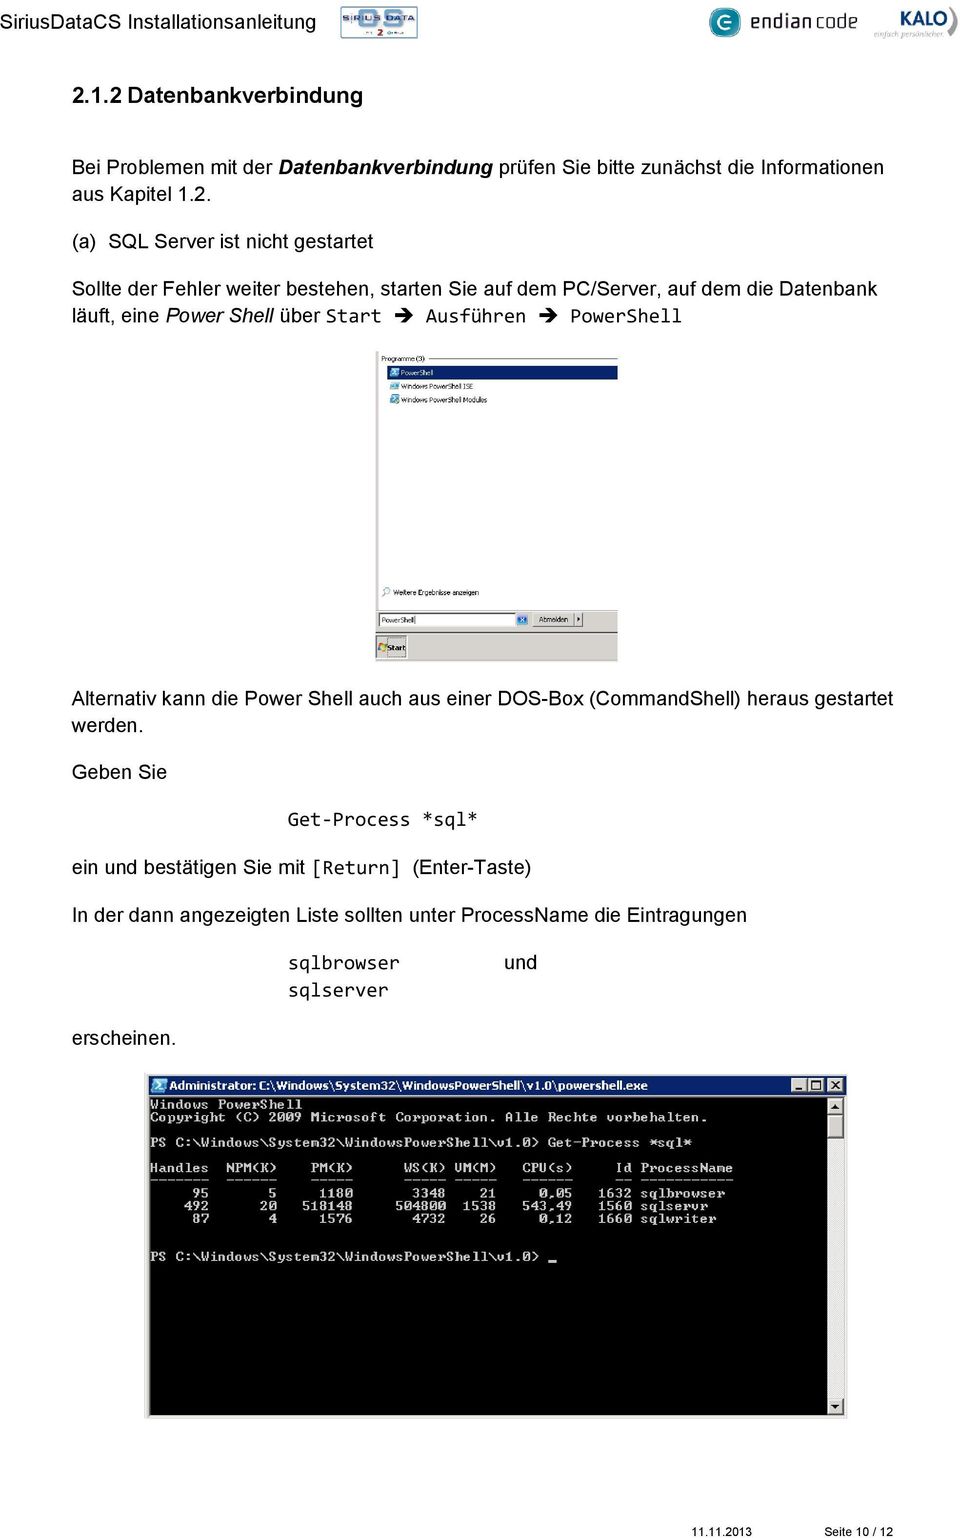 Alternativ kann die Power Shell auch aus einer DOS-Box (CommandShell) heraus gestartet werden.